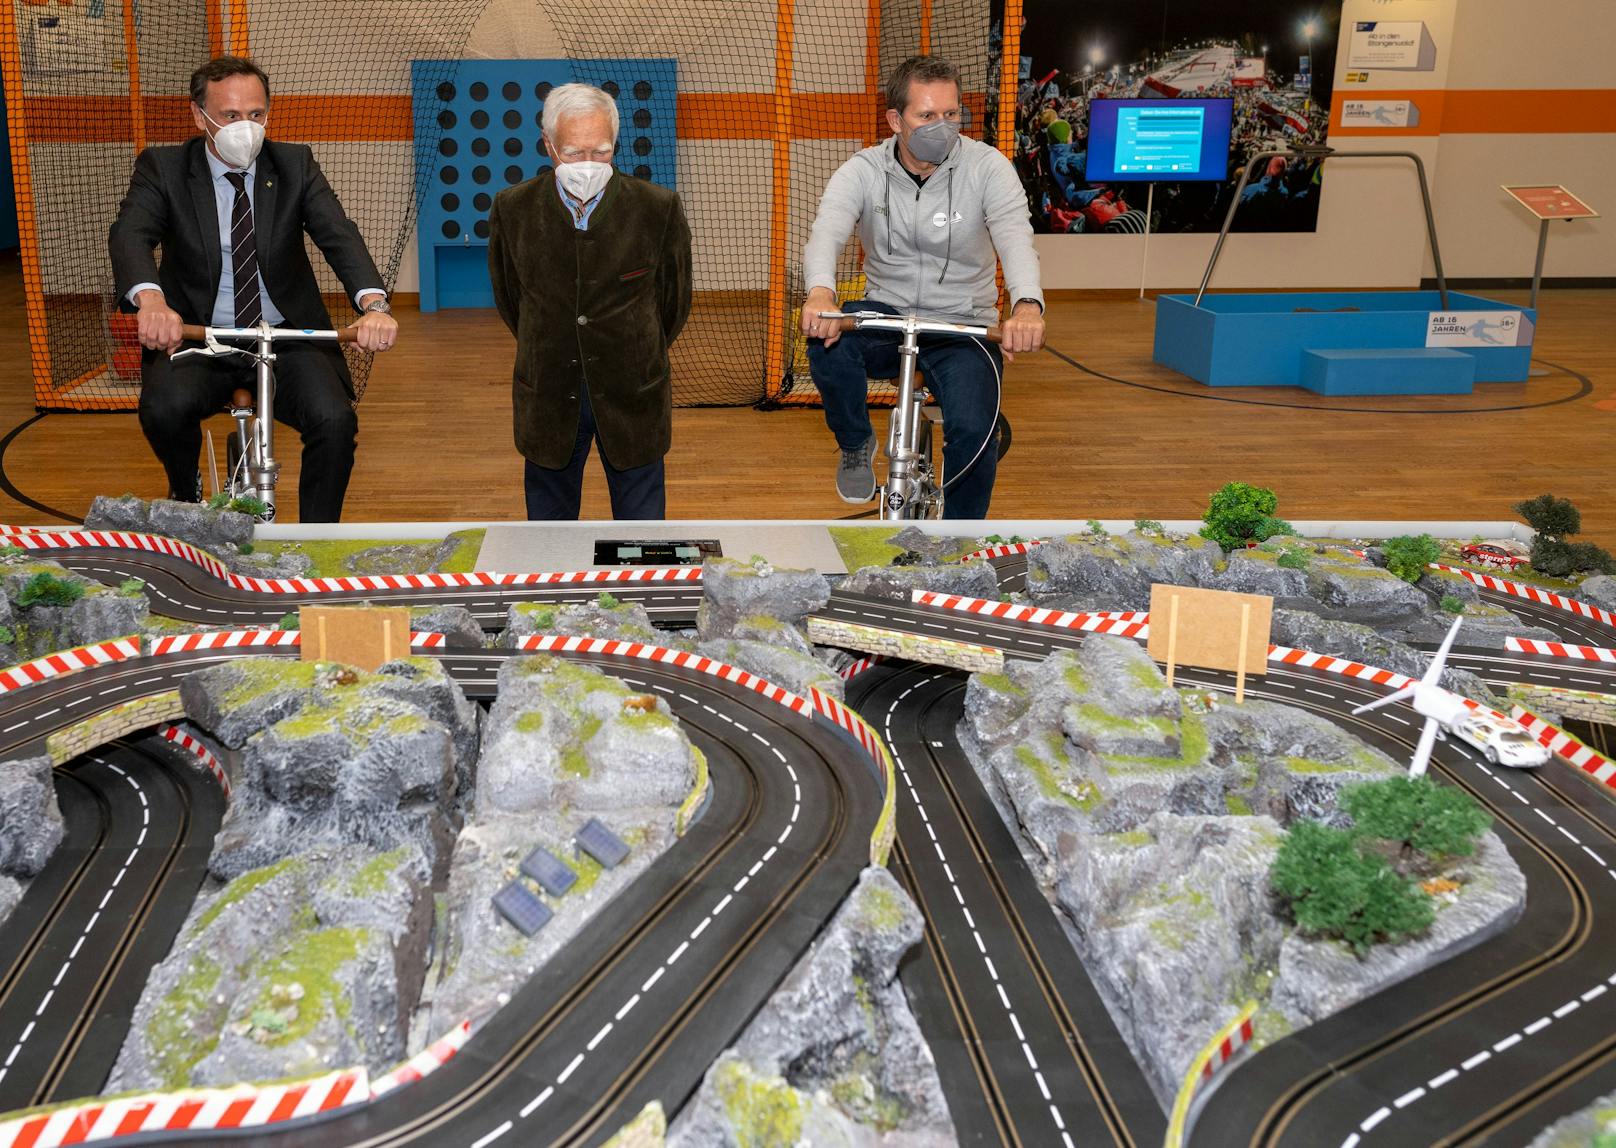 portlandesrat Jochen Danninger und Franz Stocher testen die interaktive Radstation unter Aufsicht von Gunnar Prokop